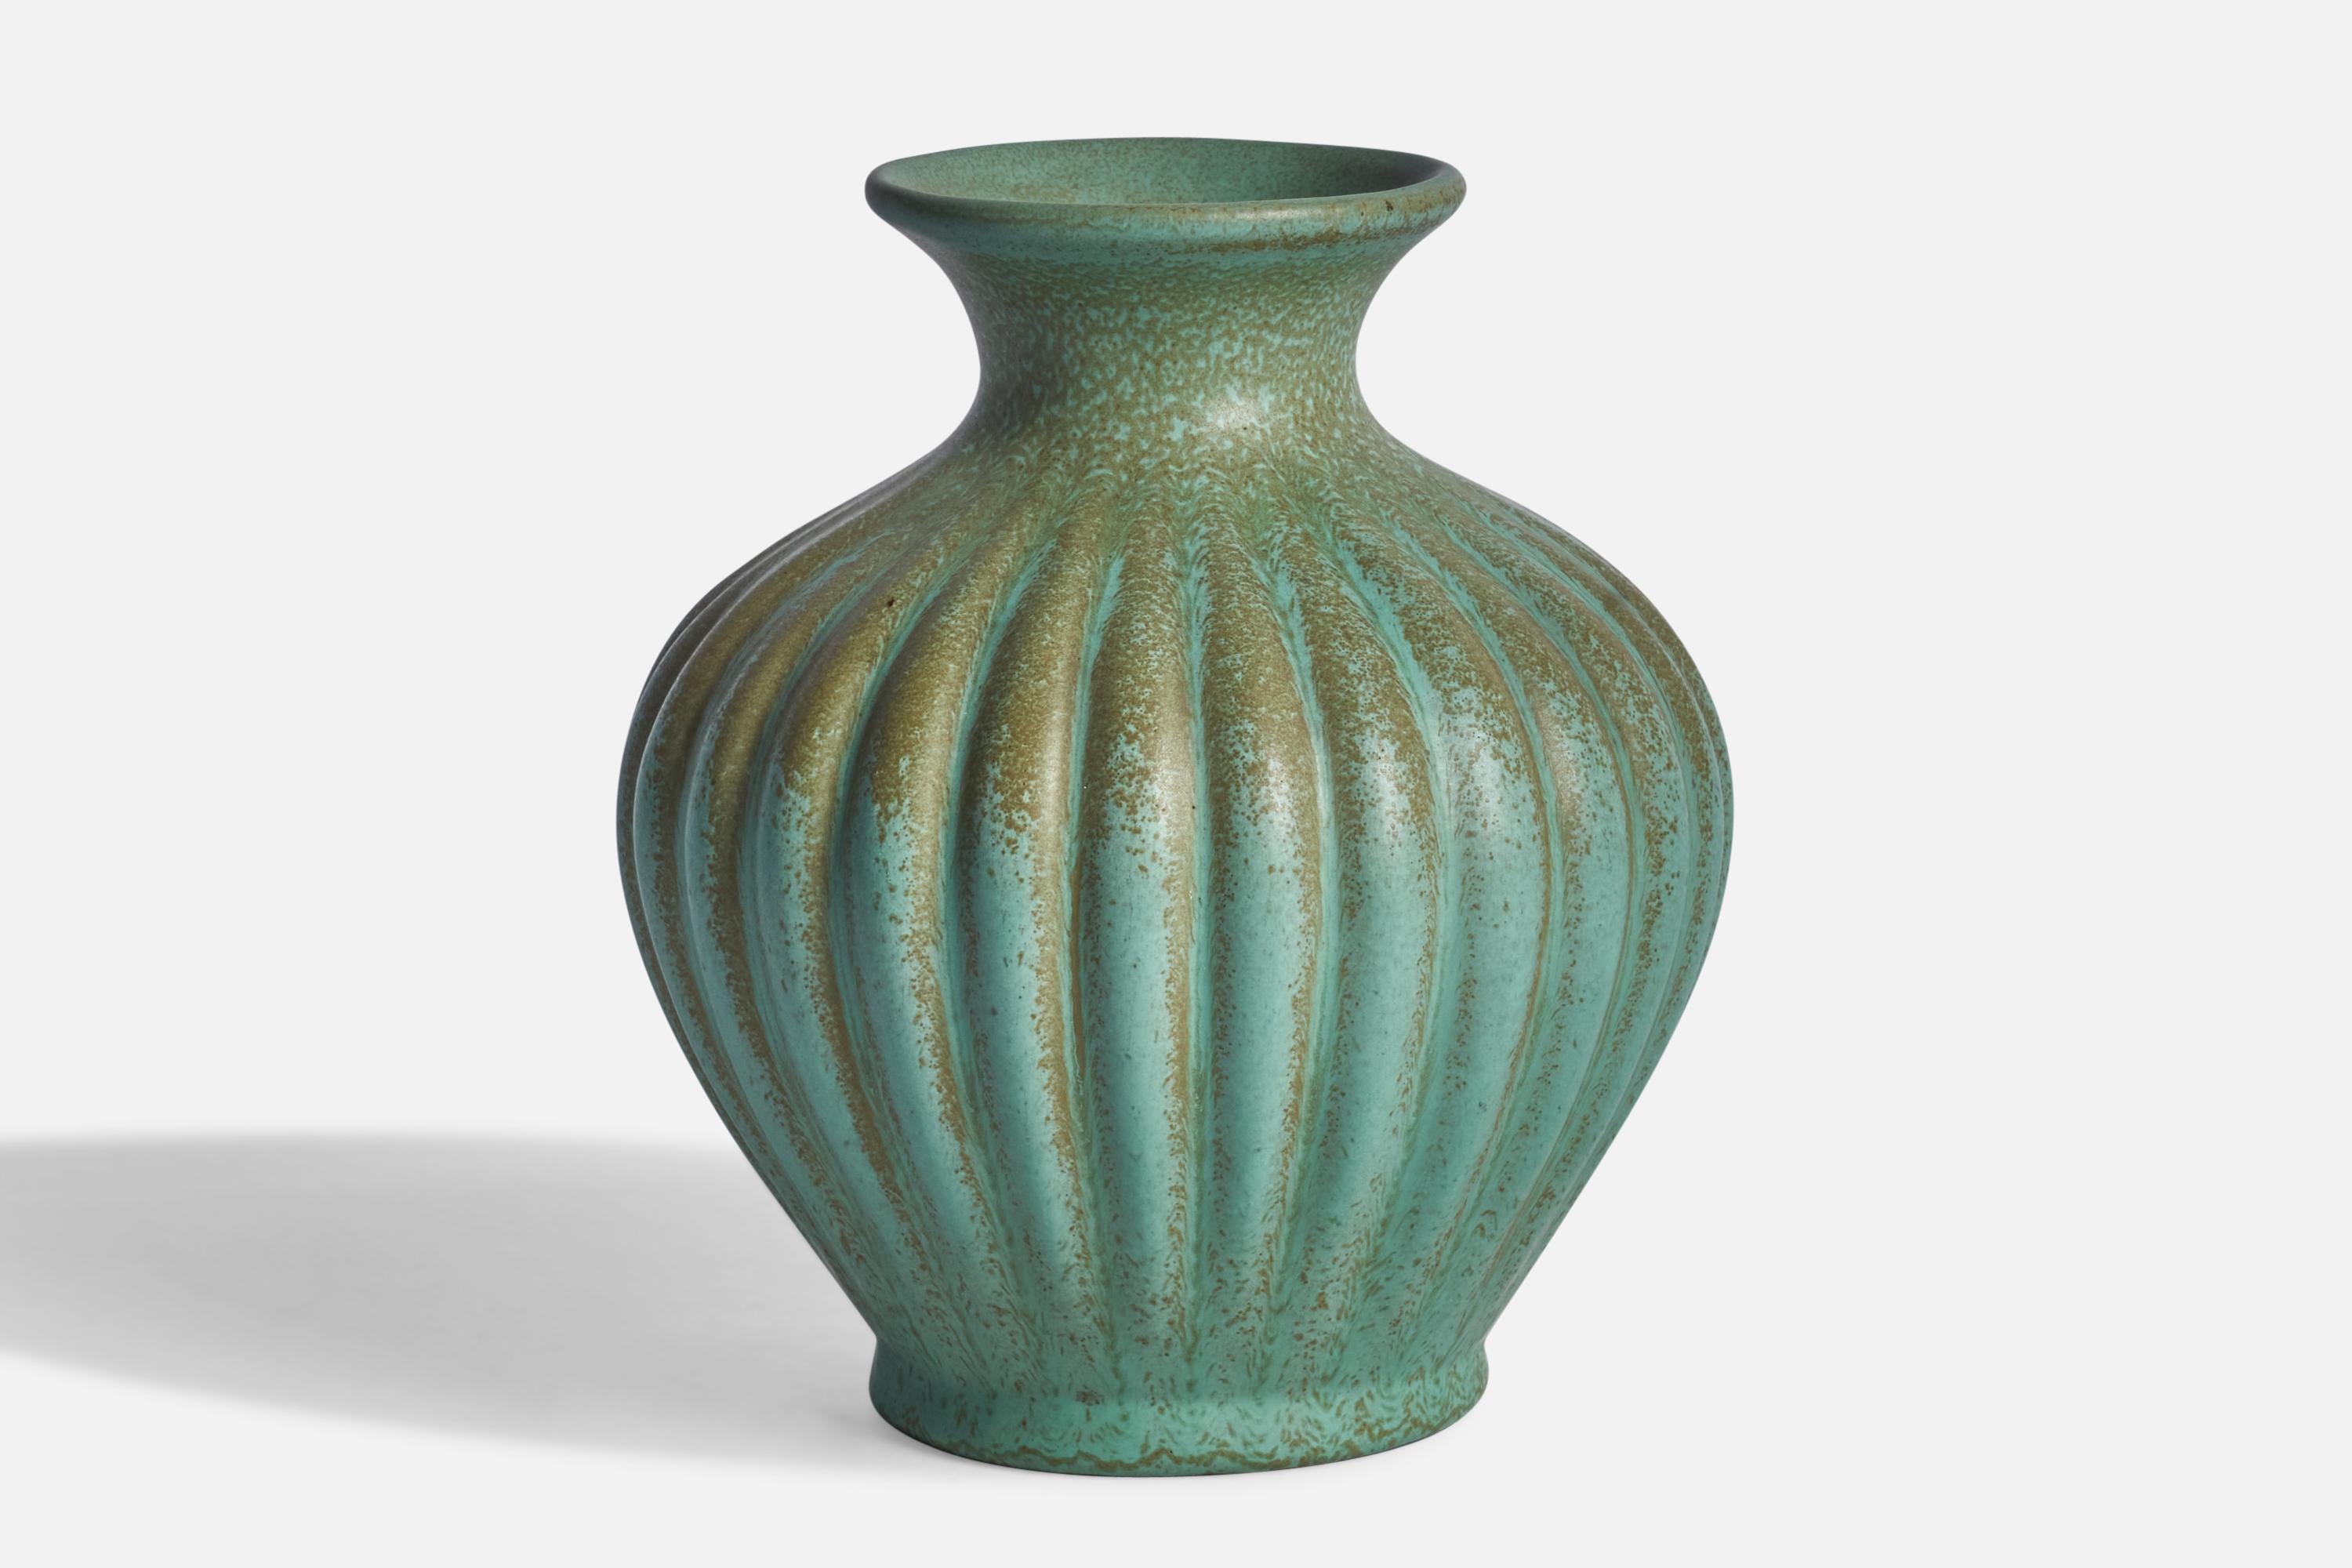 A green-glazed fluted earthenware vase designed by Ewald Dahlskog and produced by Bo Fajans, Sweden, c. 1930s.
“SMARAGD” stamp on bottom